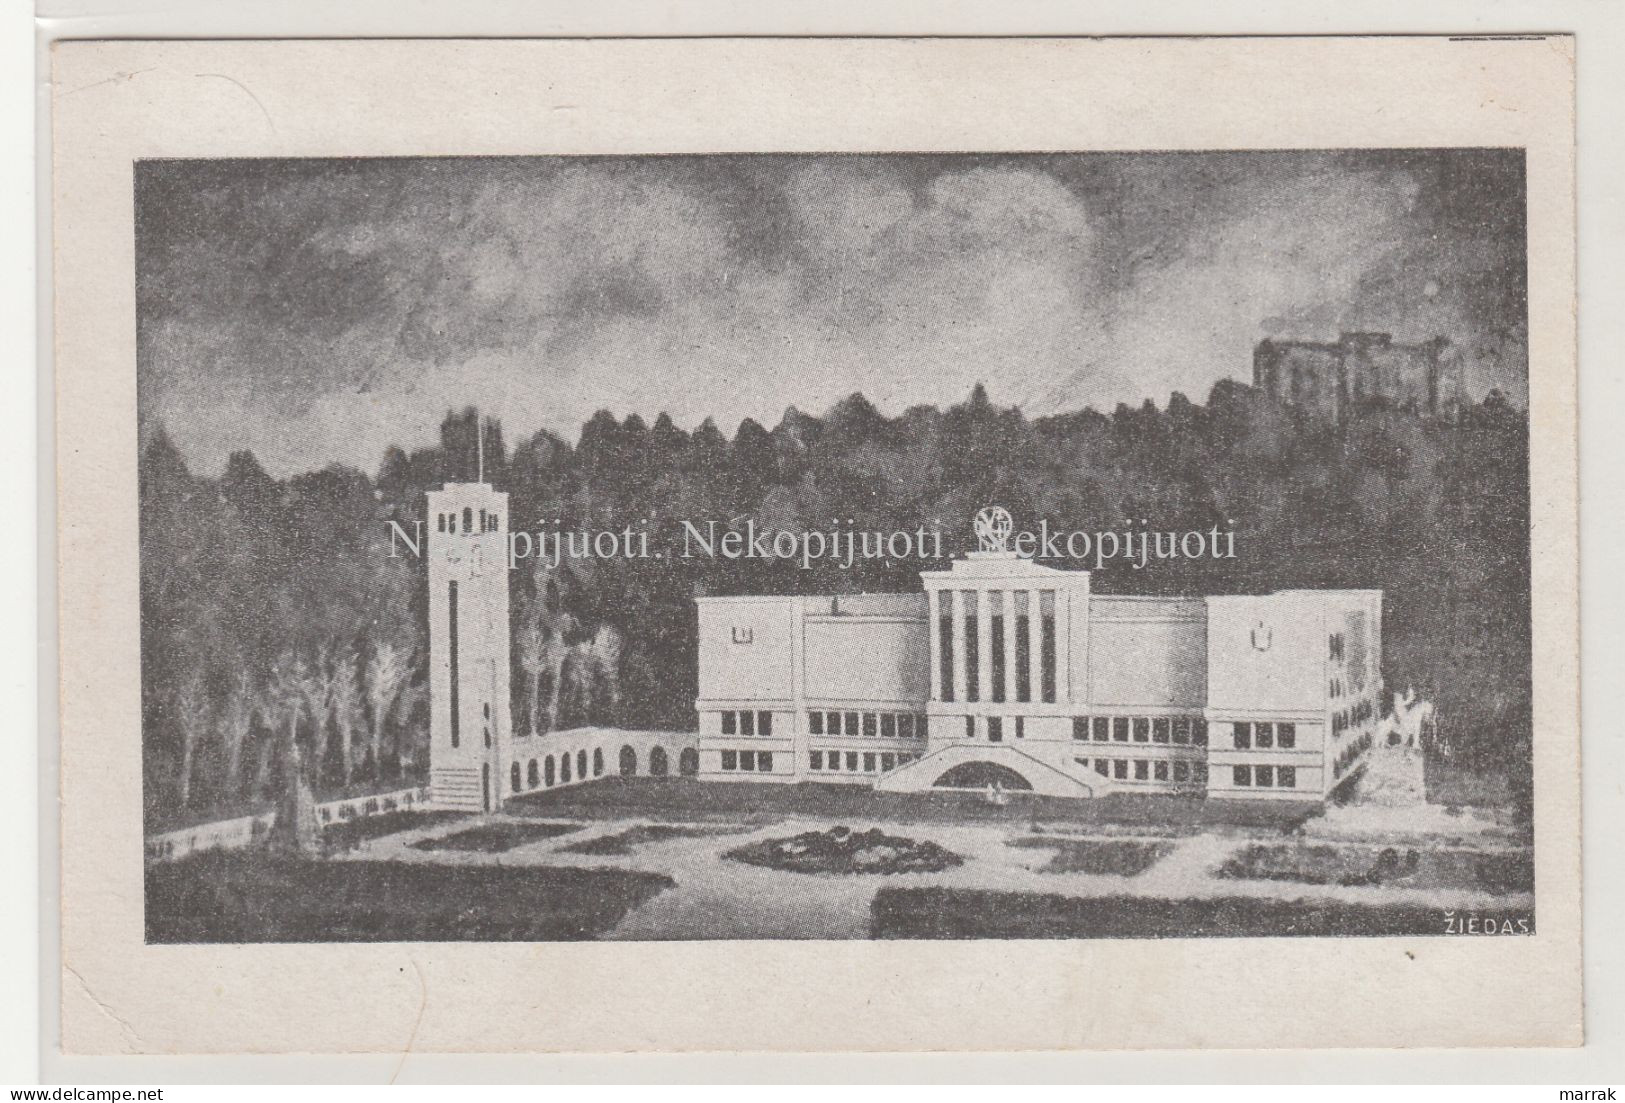 Kaunas, Karo Muziejus, Apie 1930 M. Atvirukas - Lituanie